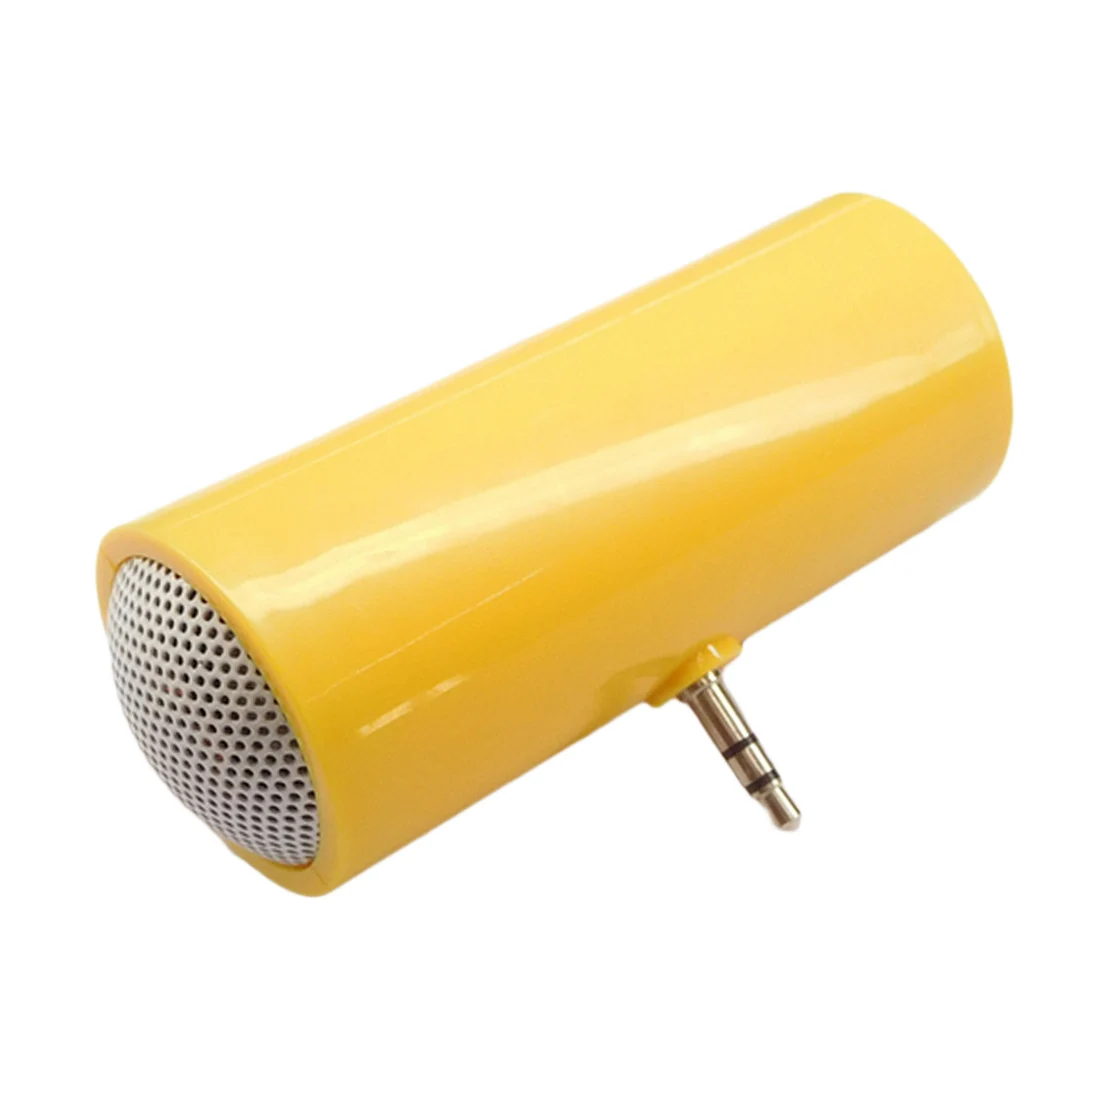 3,5 мм прямая вставка стерео мини динамик микрофон Портативный динамик MP3 музыкальный плеер Громкий динамик для мобильного телефона и планшета ПК - Цвет: Yellow